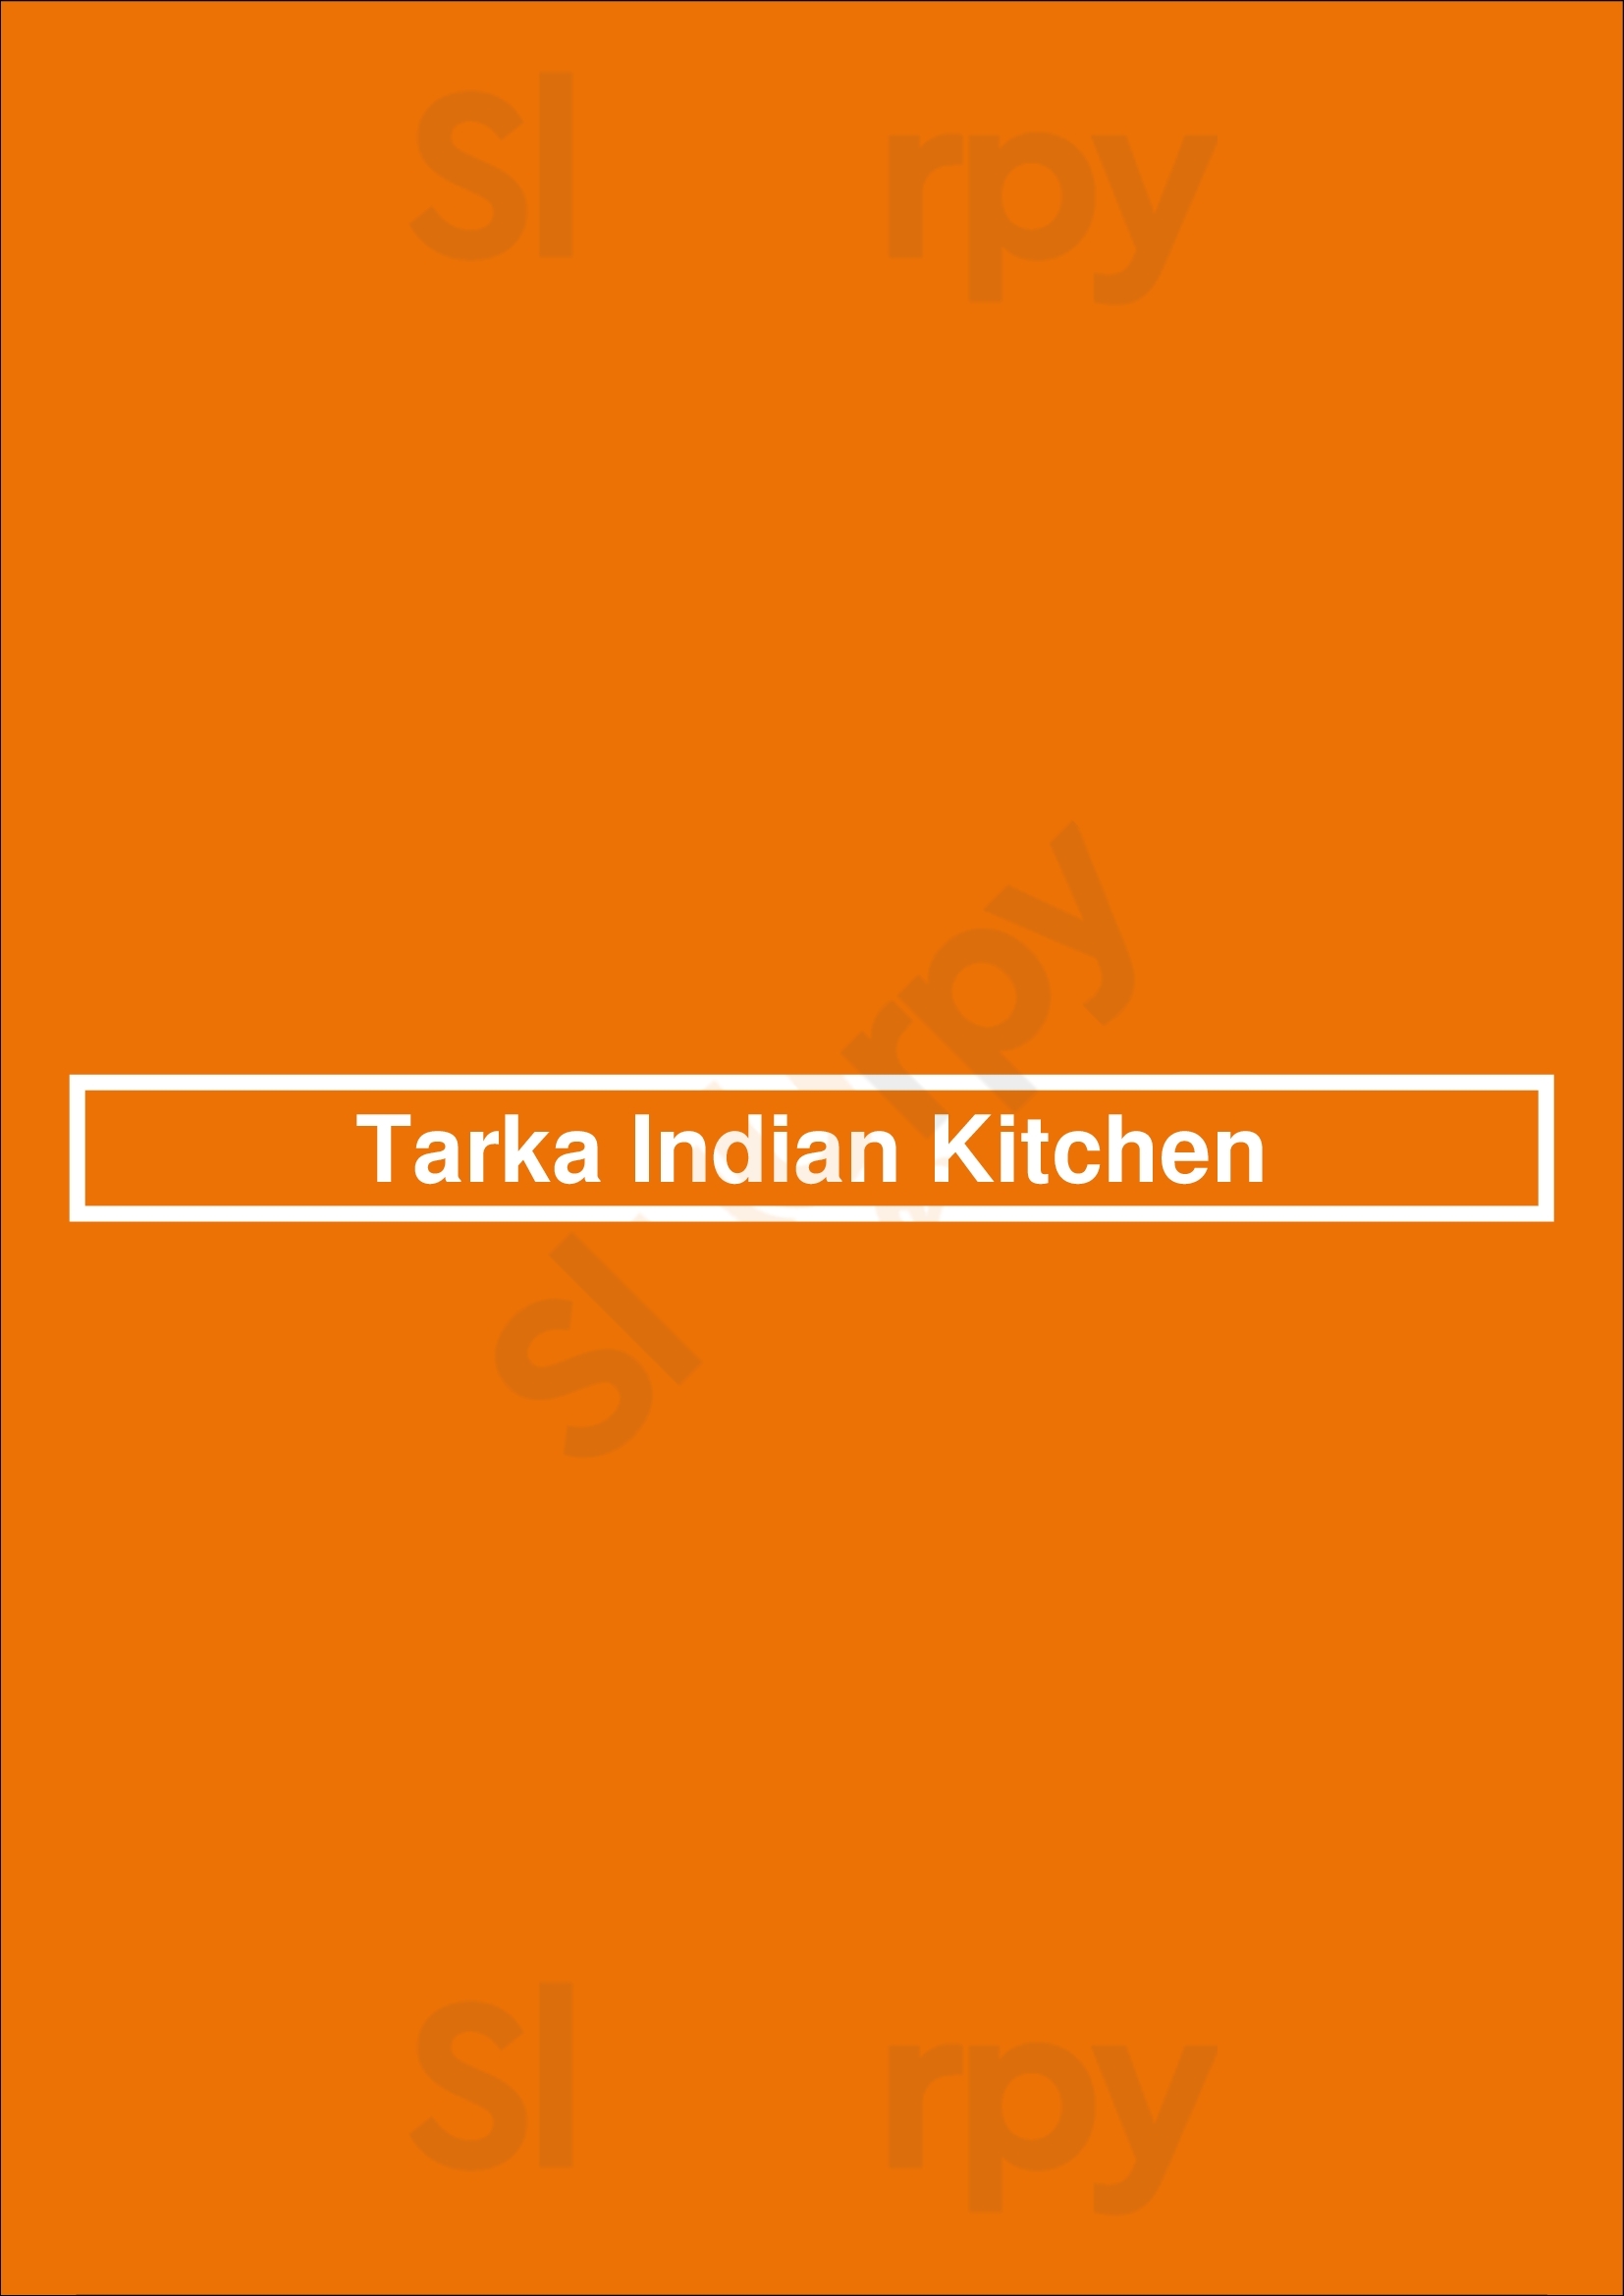 Tarka Indian Kitchen Houston Menu - 1